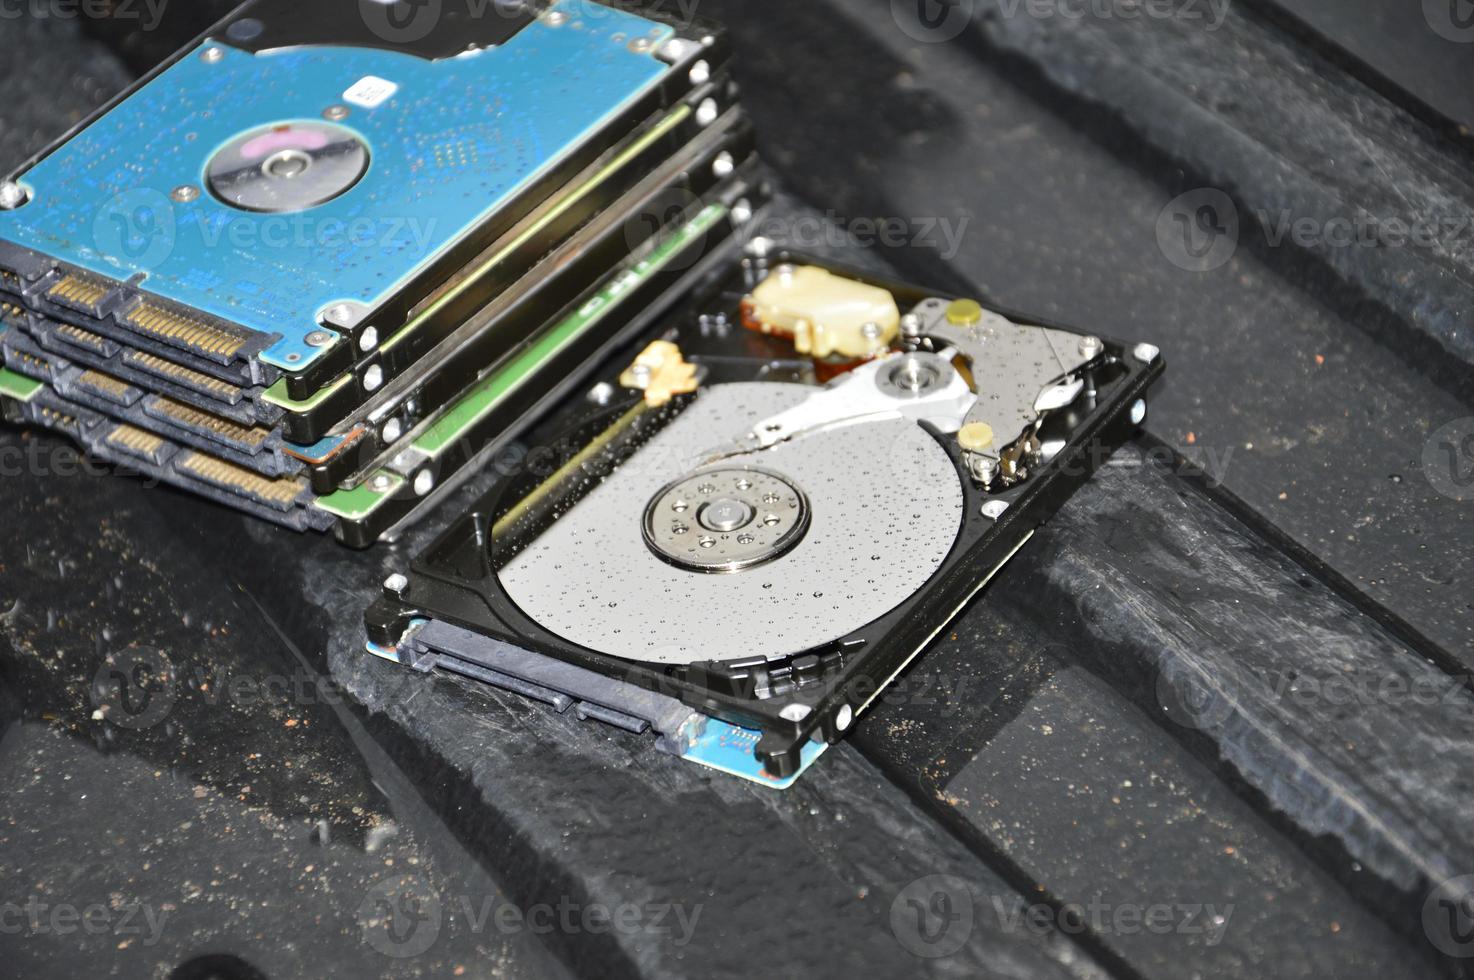 Les images de disque dur de type disque rotatif de 2,5 pouces sont encore couramment utilisées aujourd'hui. photo